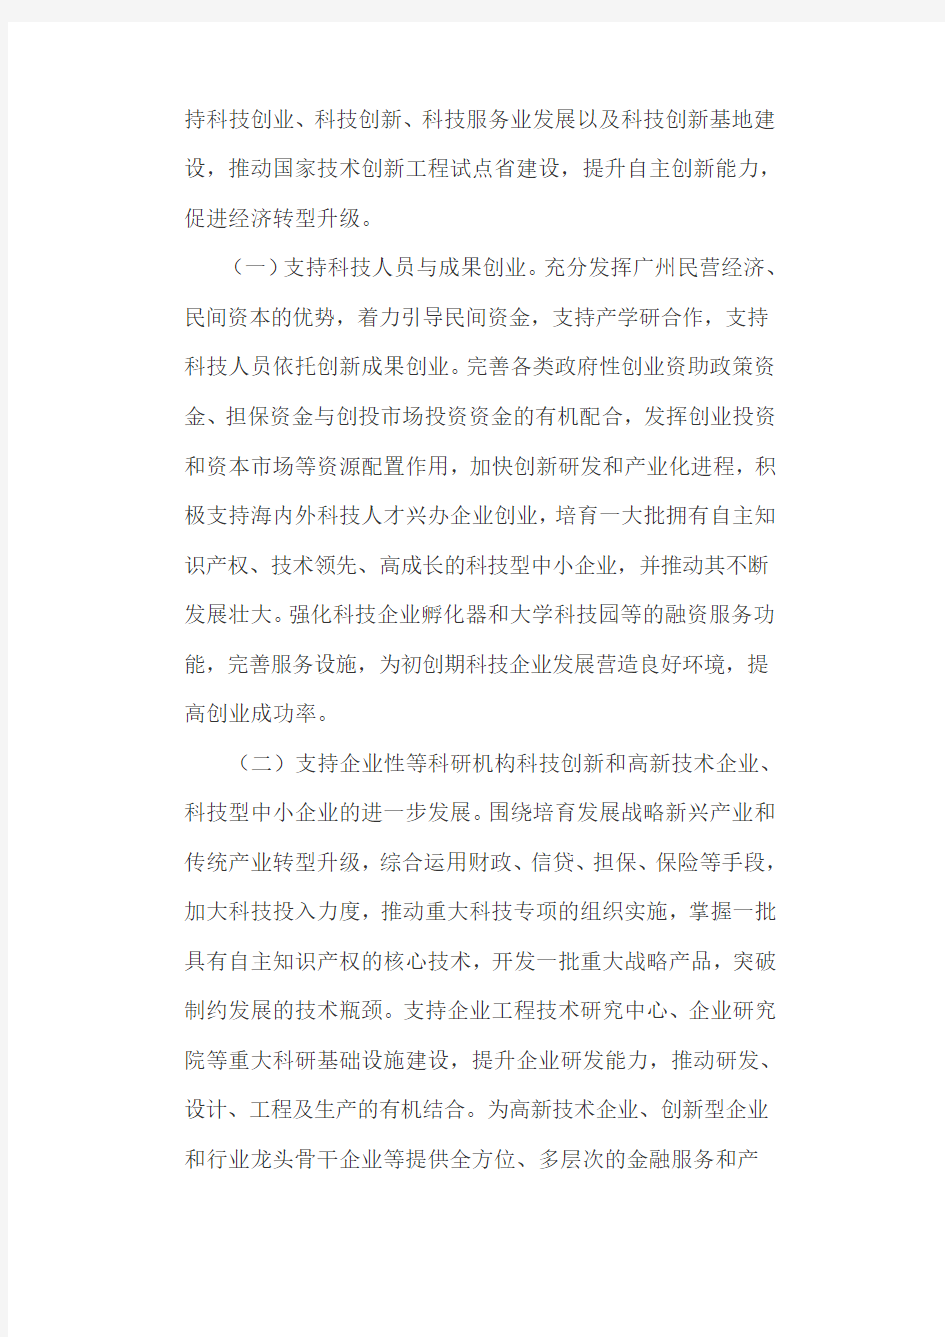 广州市人民政府关于促进科技与金融结合意见的通知